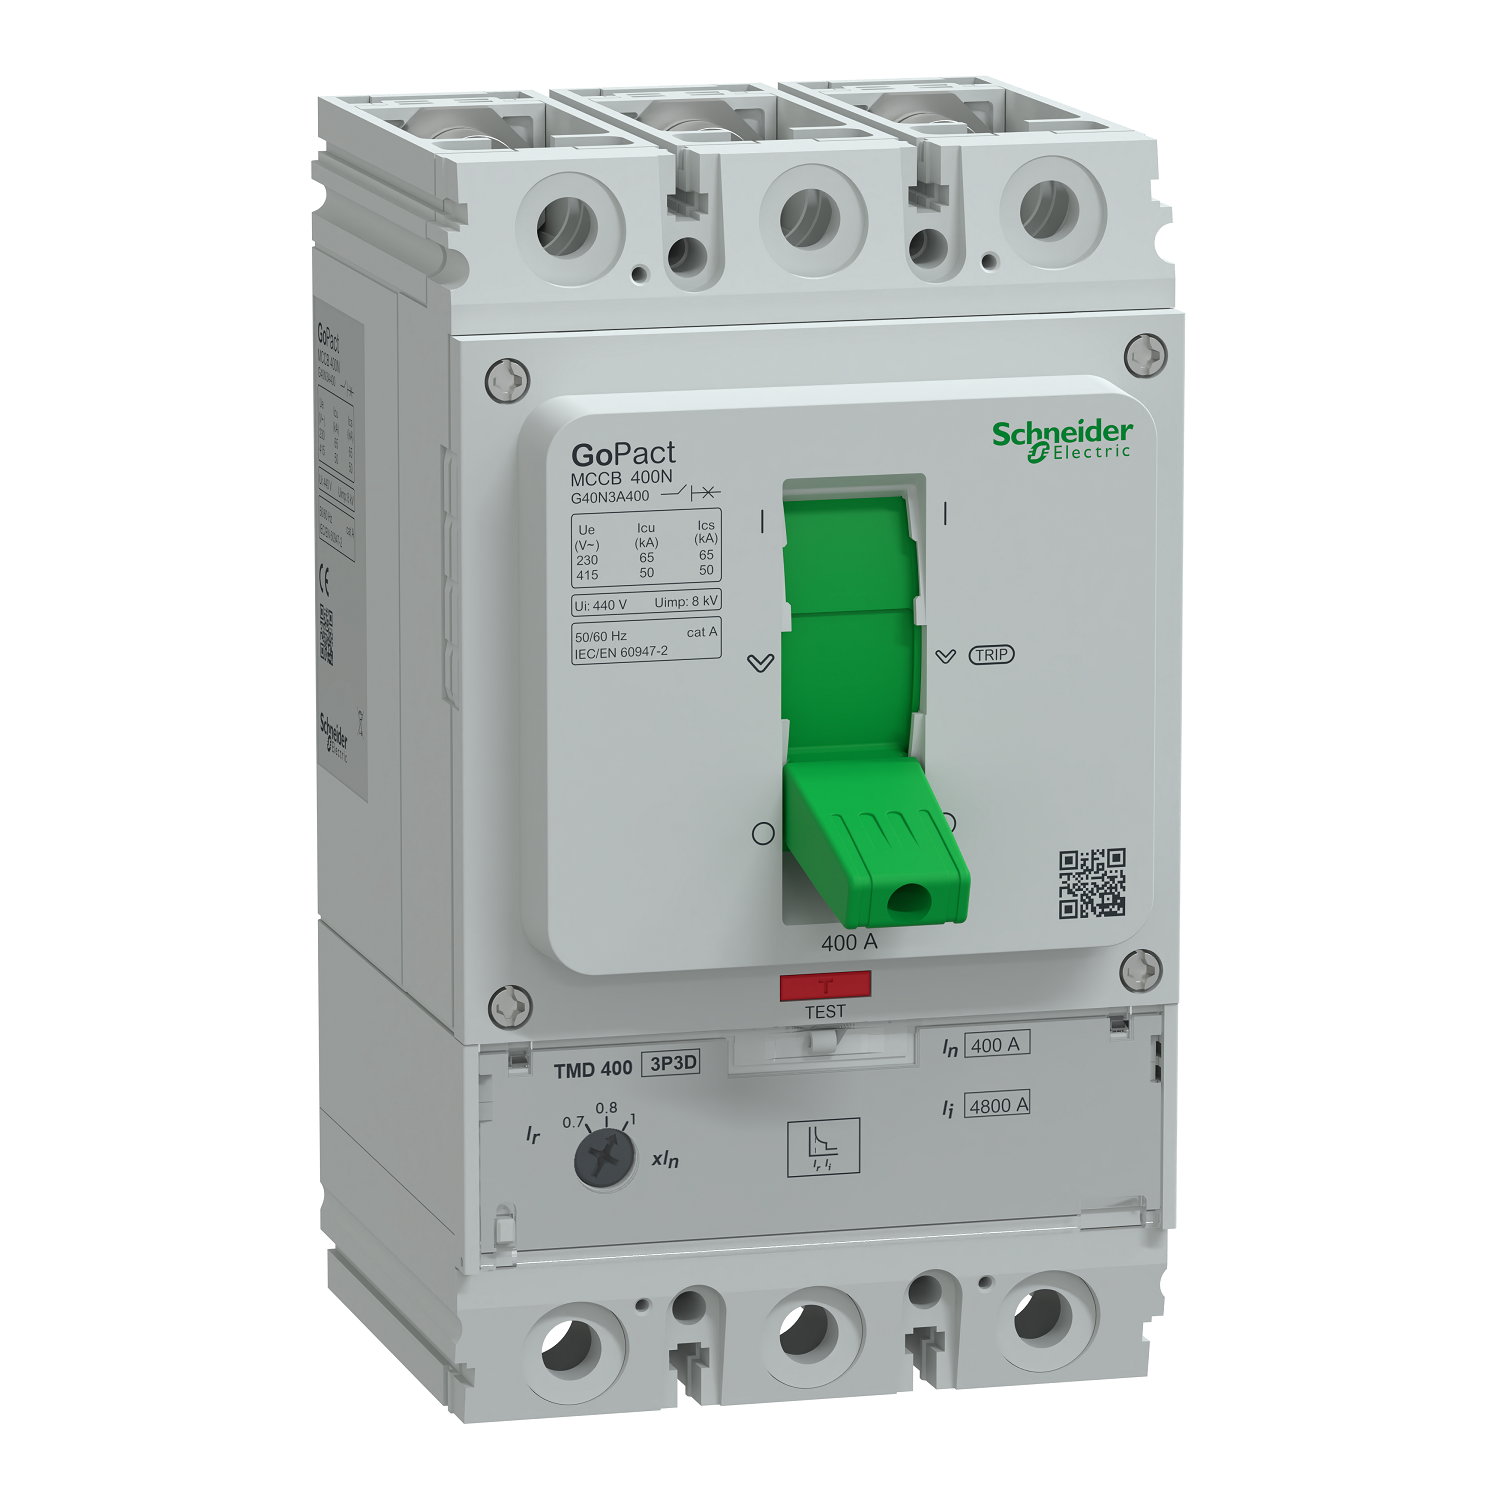 Circuit breaker, GoPact MCCB 400, 3 poles, 50kA at 415VAC, 400A rating, TMD trip unit, adjustable thermal protection